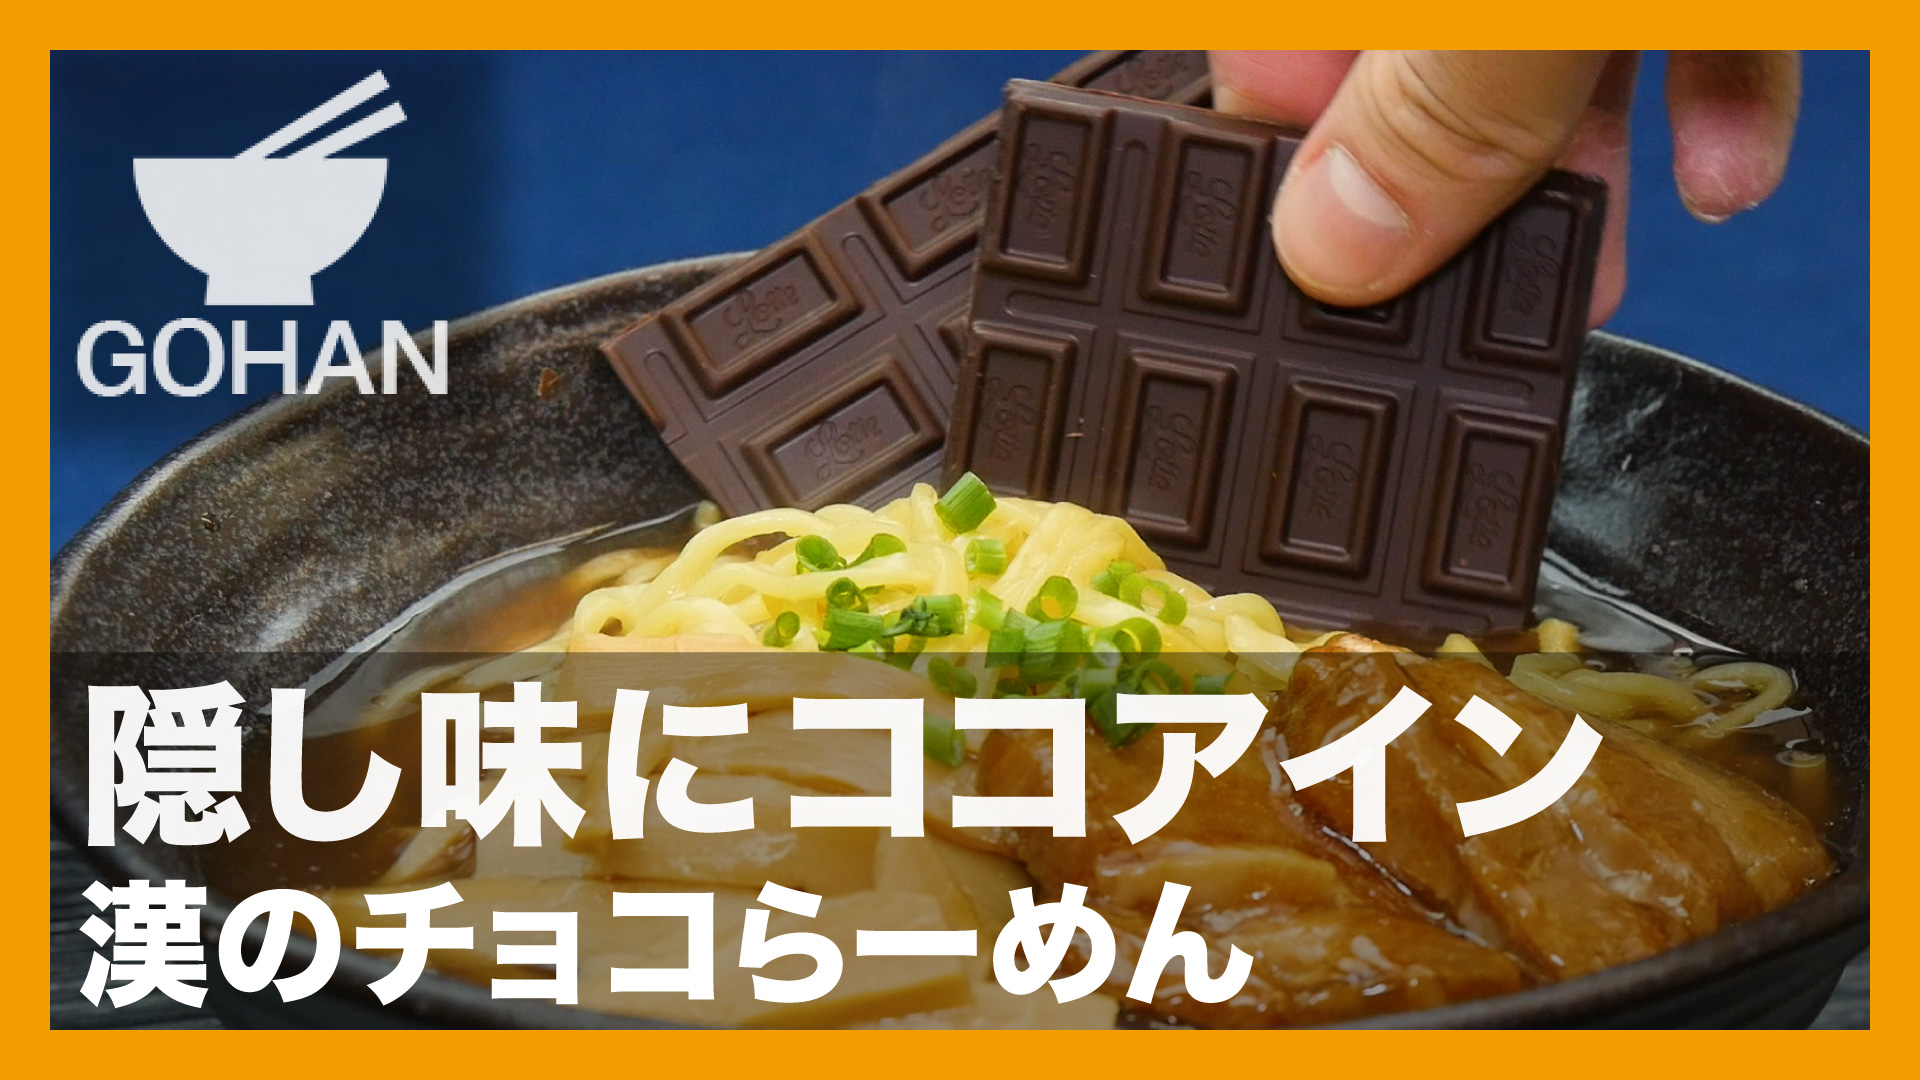 簡単レシピ 隠し味にココアイン 漢のチョコらーめん の作り方 簡単男飯レシピ 作り方 Gohan